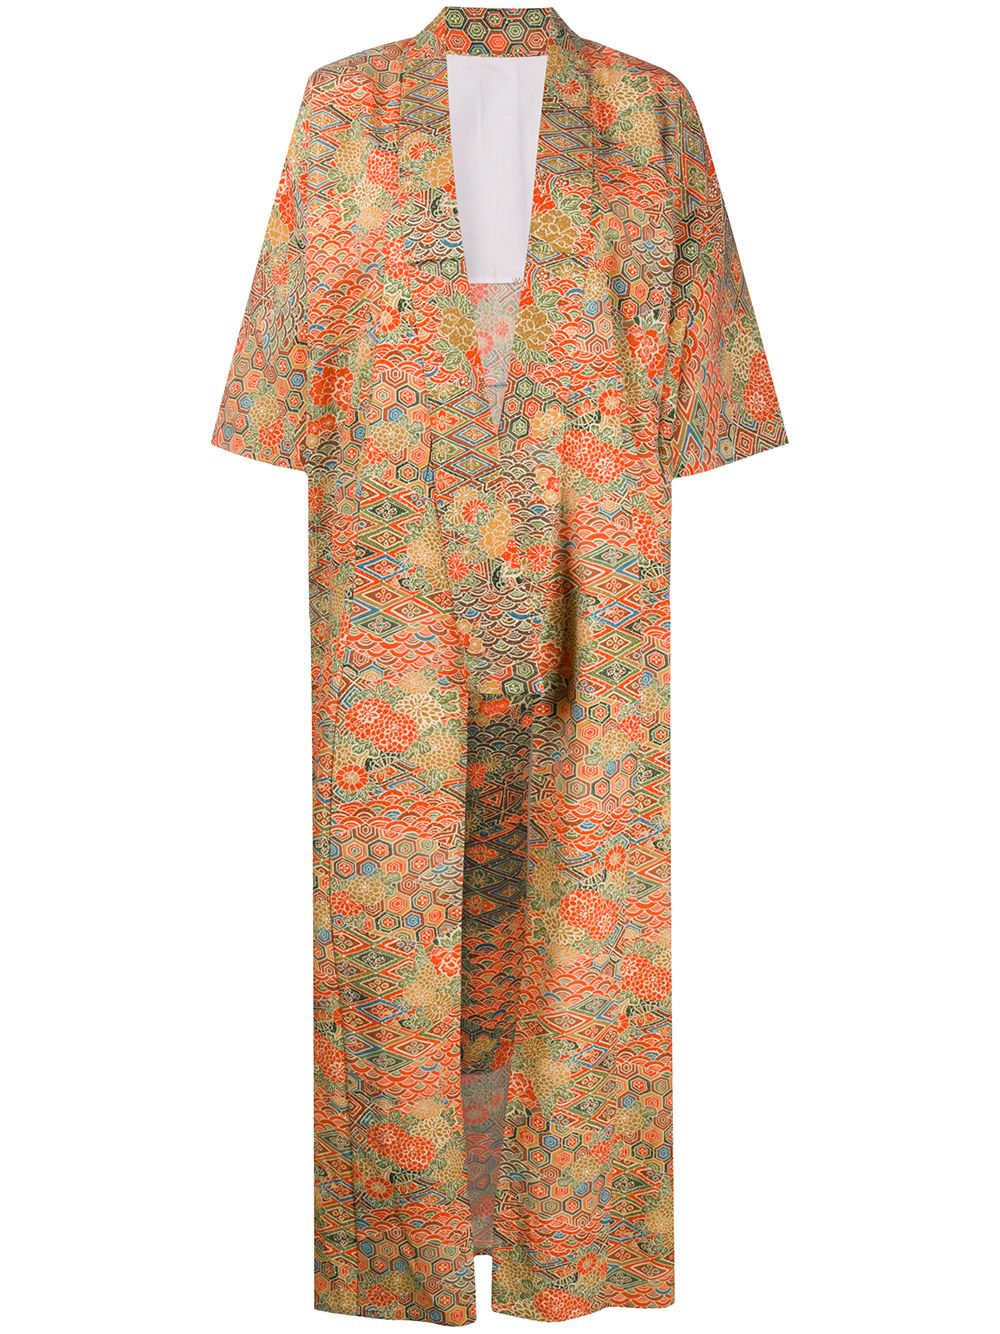 фото A.n.g.e.l.o. vintage cult пальто-кимоно 1970-х годов с цветочным принтом